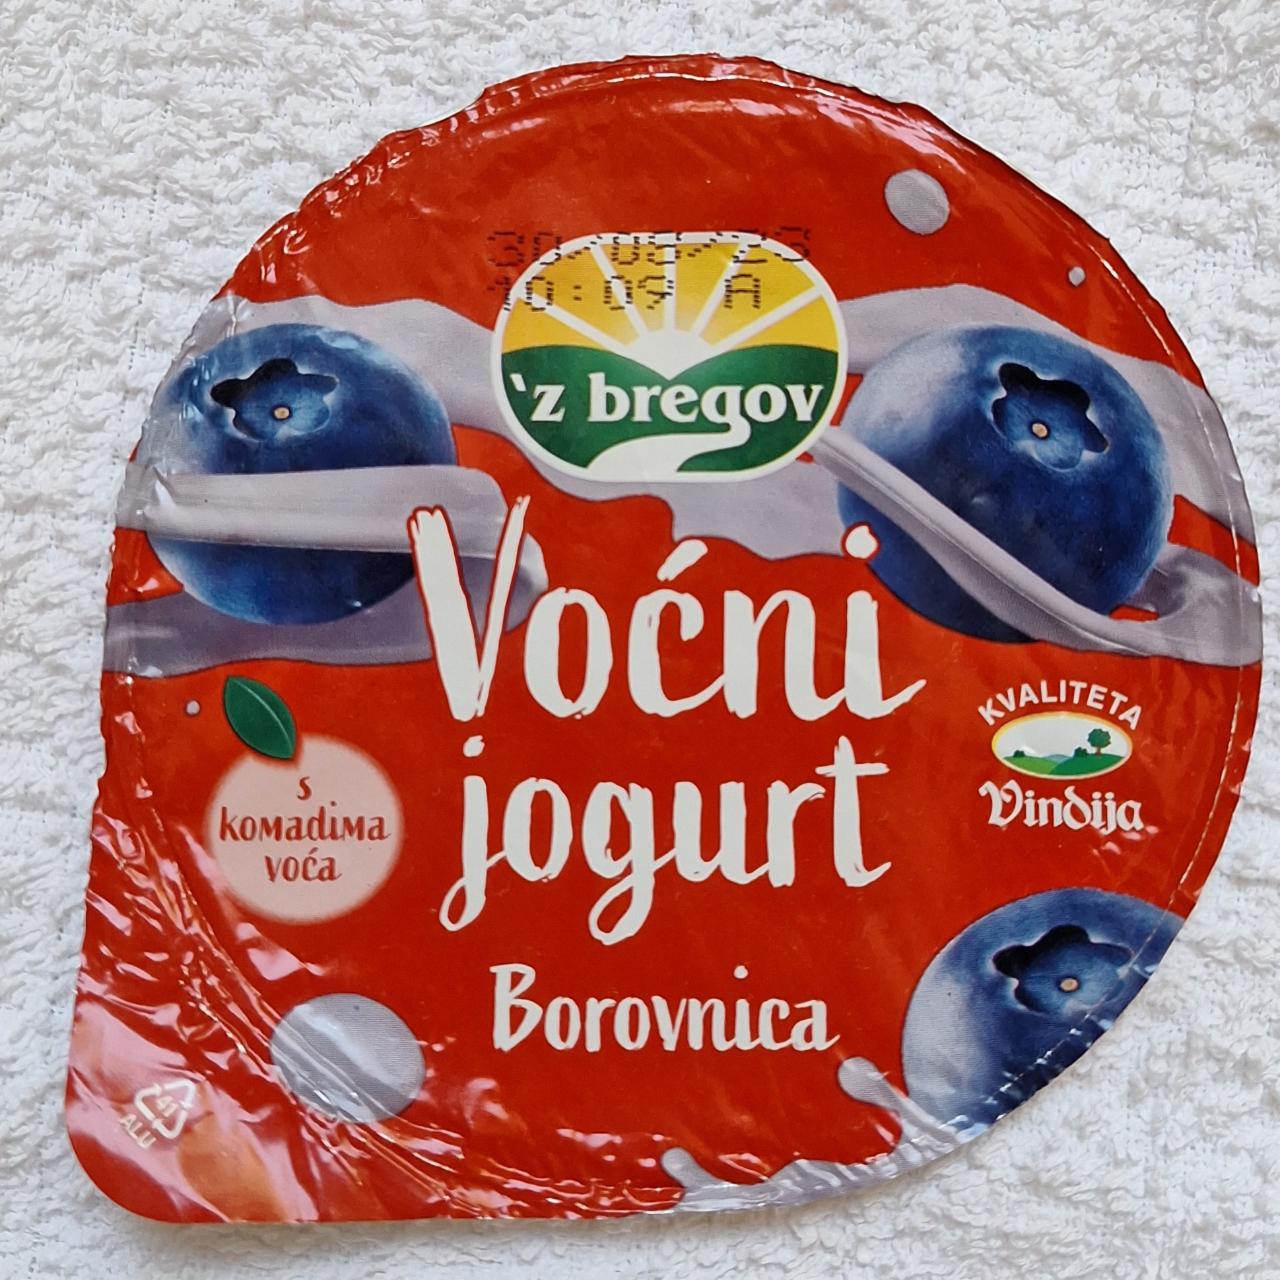 Fotografie - Voćni jogurt Borovnica Z bregov